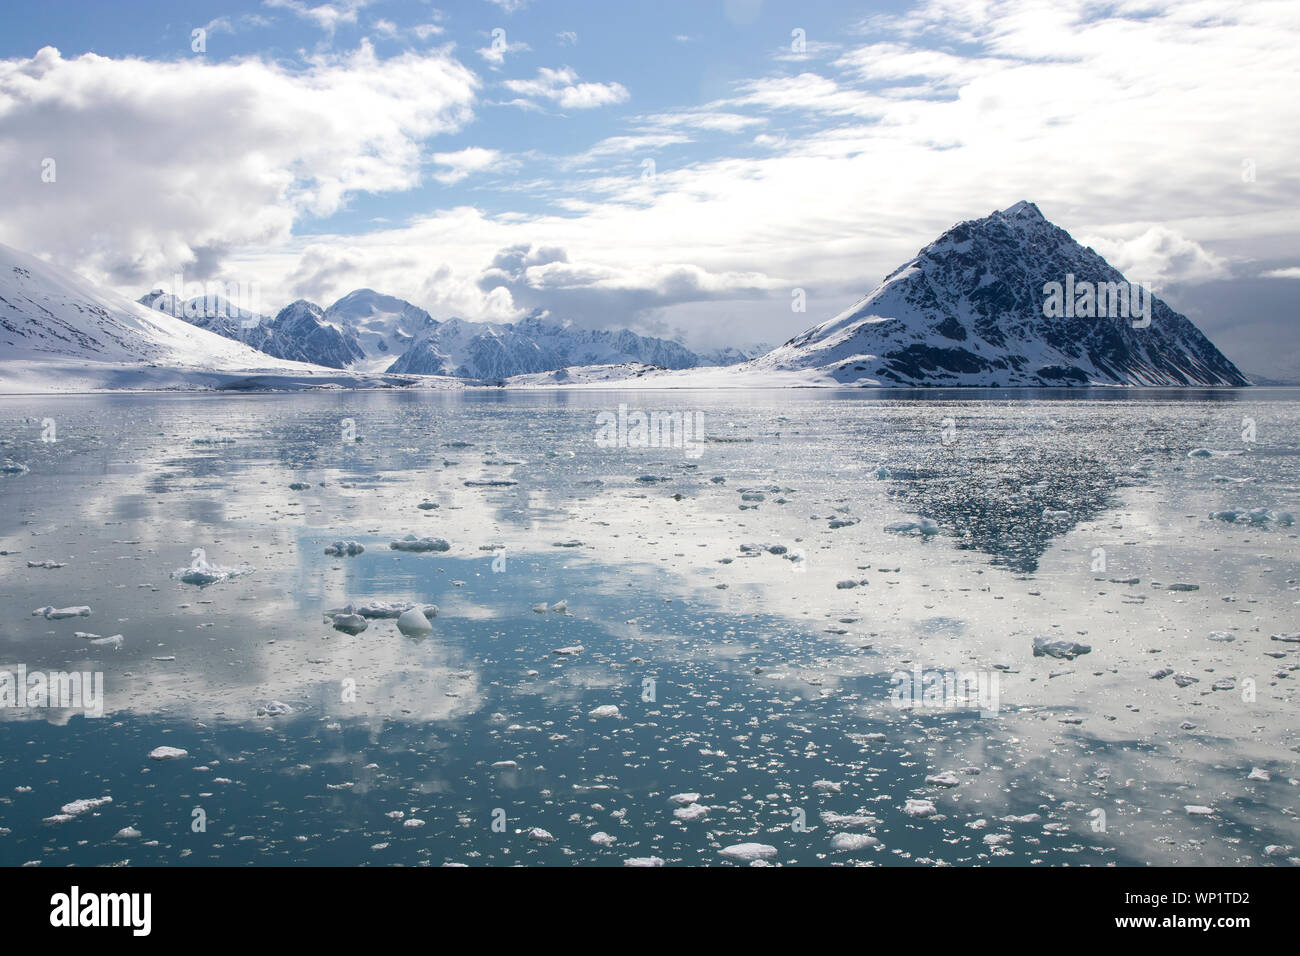 Il presagio, ma incredibilmente belle montagne e acque delle isole Svalbard (aka Spitsbergen) nell'Artico. Foto Stock